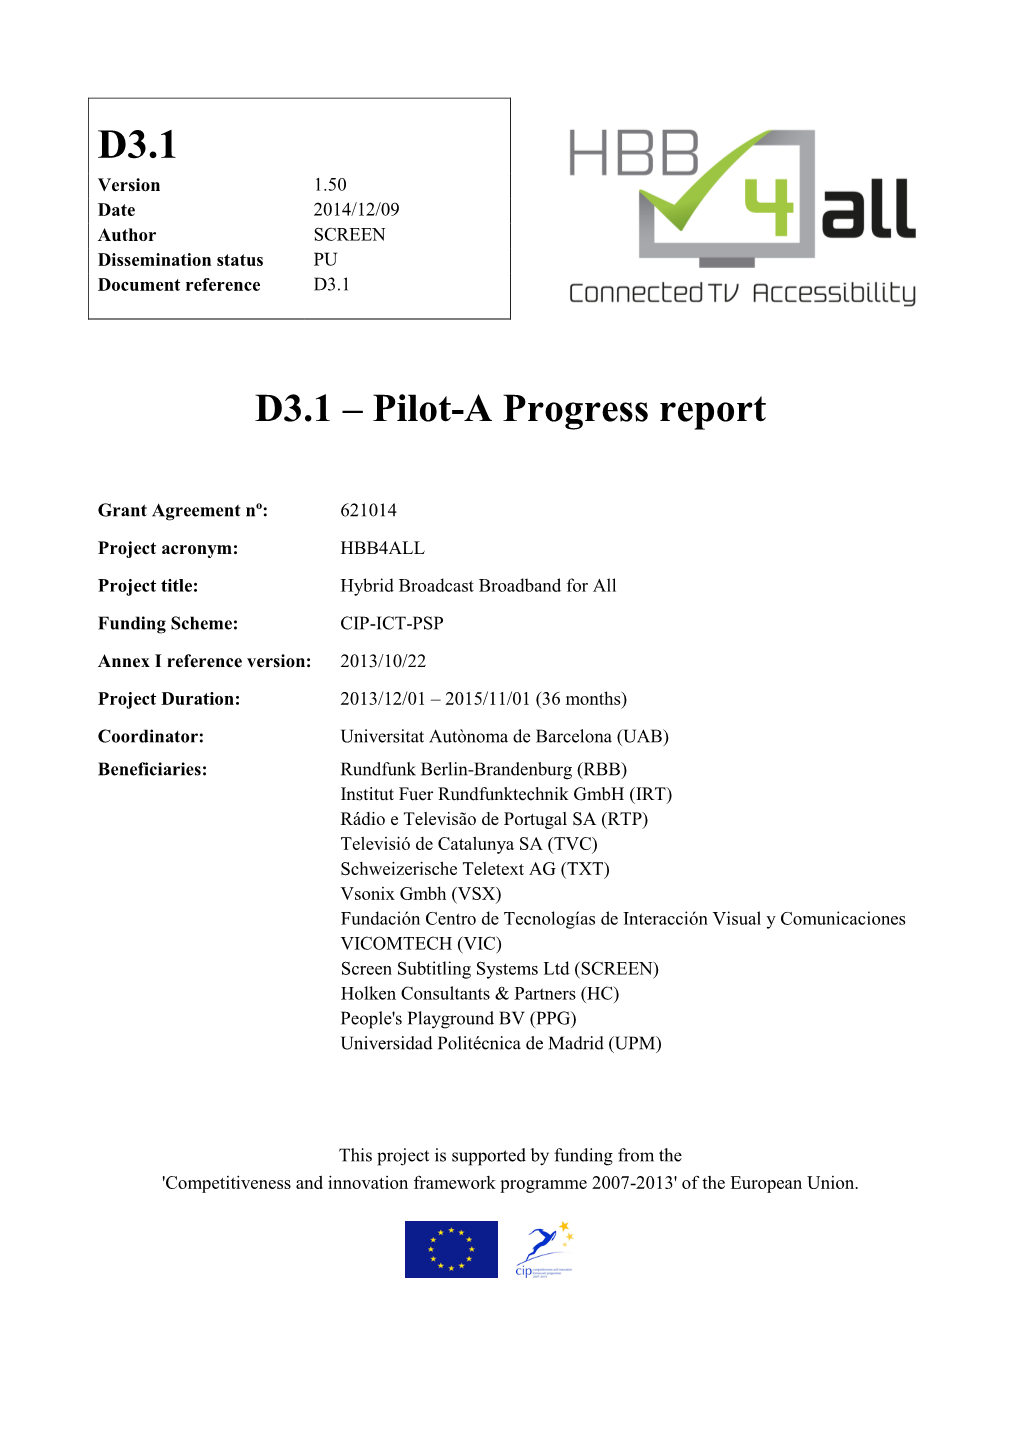 D3.1 – Pilot-A Progress Report